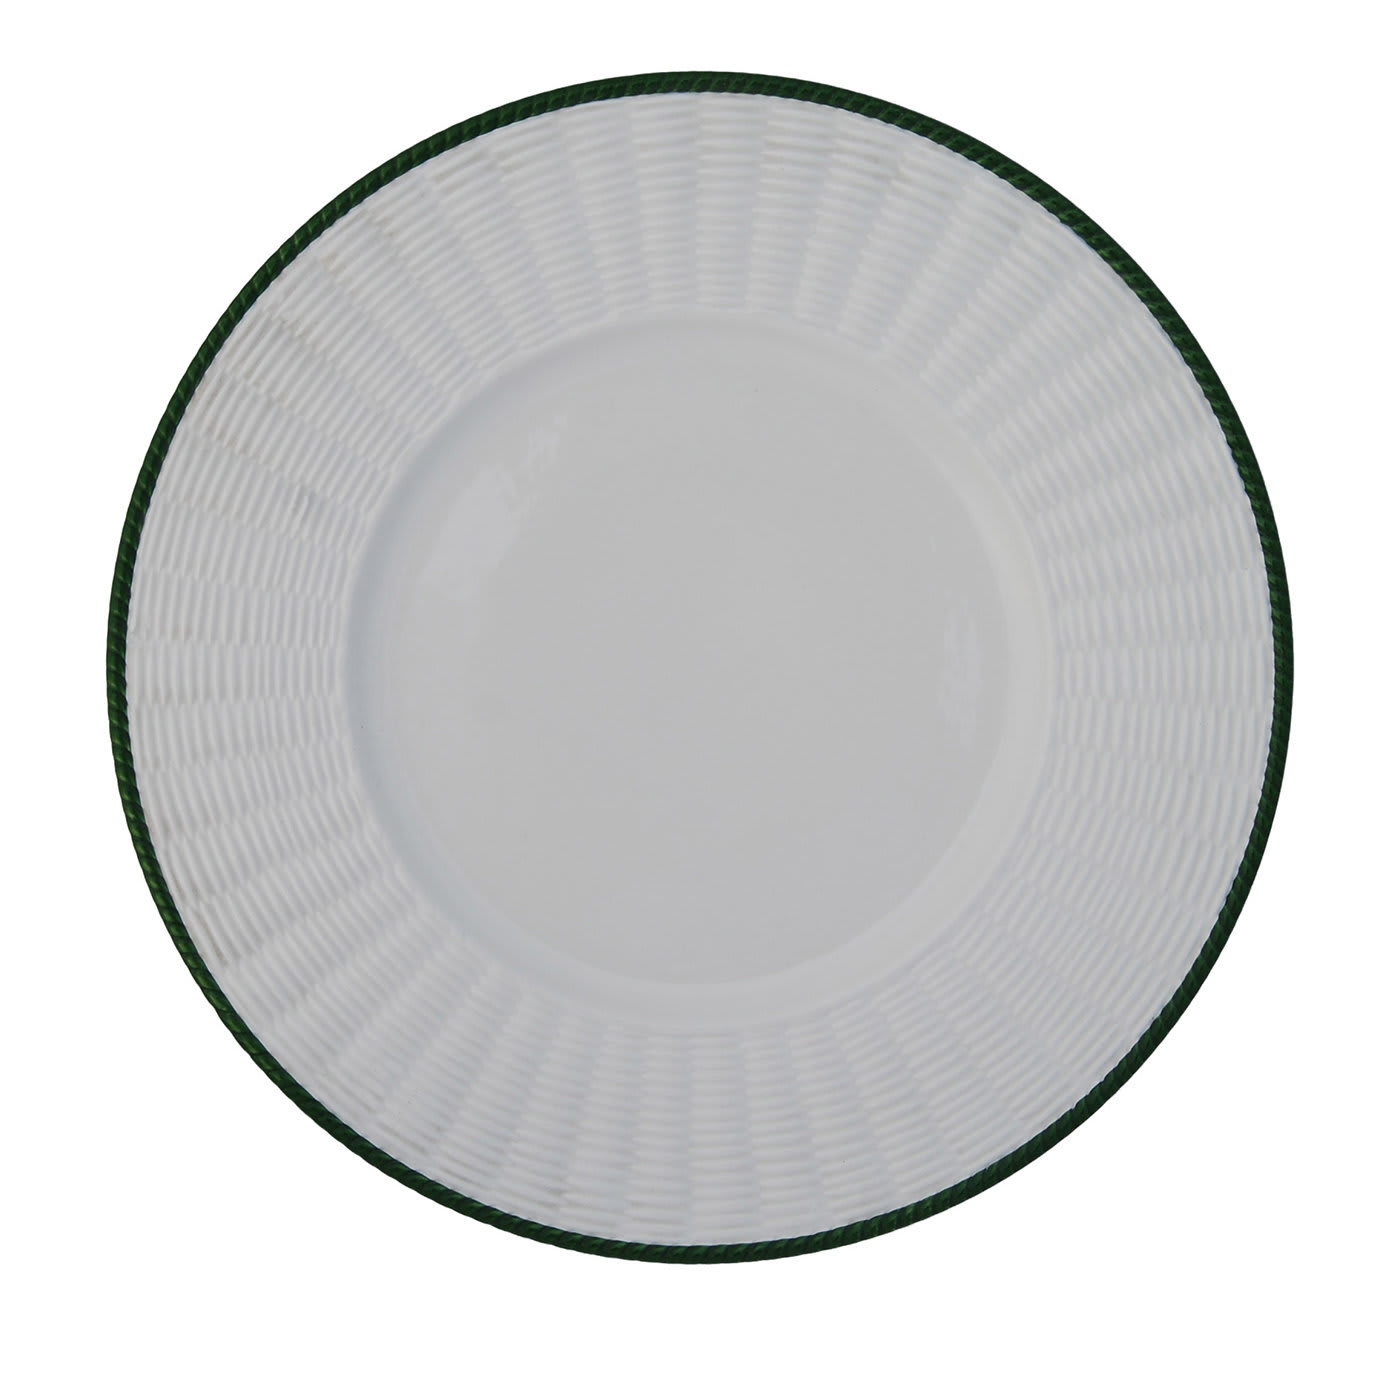 Set of 4 Green Wicker Ceramic Plates - Este Ceramiche